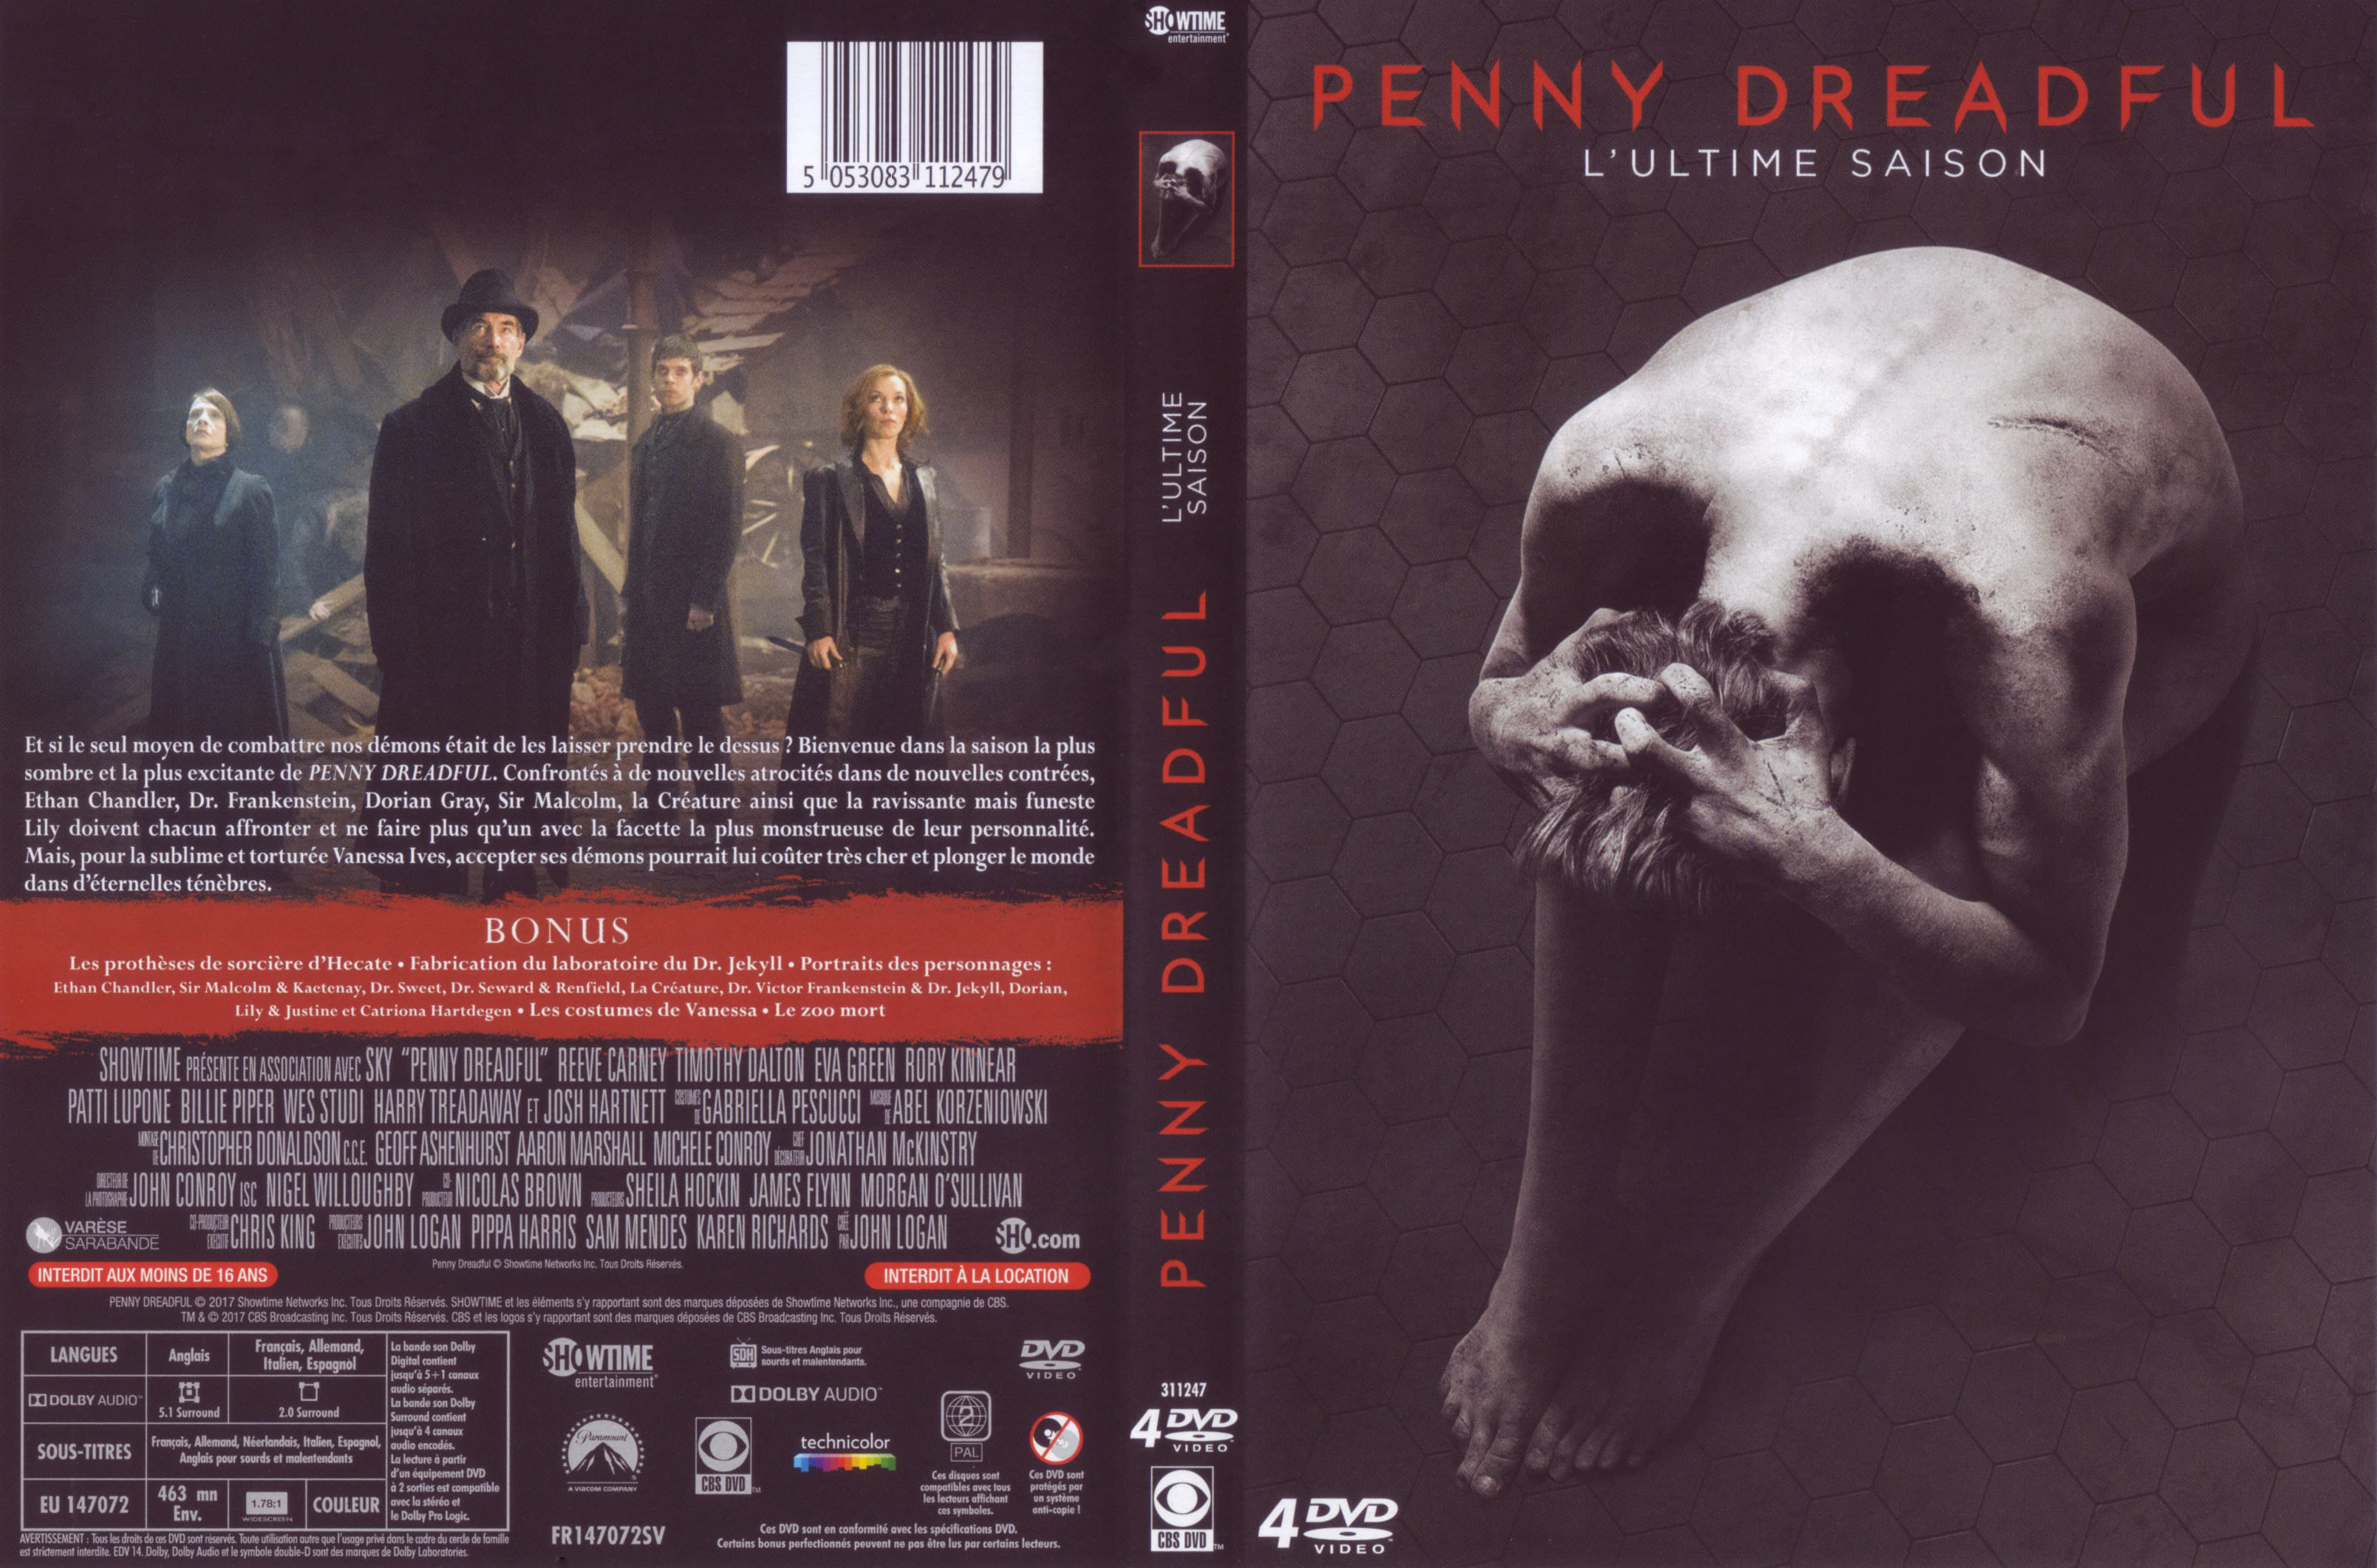 Jaquette DVD Penny dreadful Saison 3